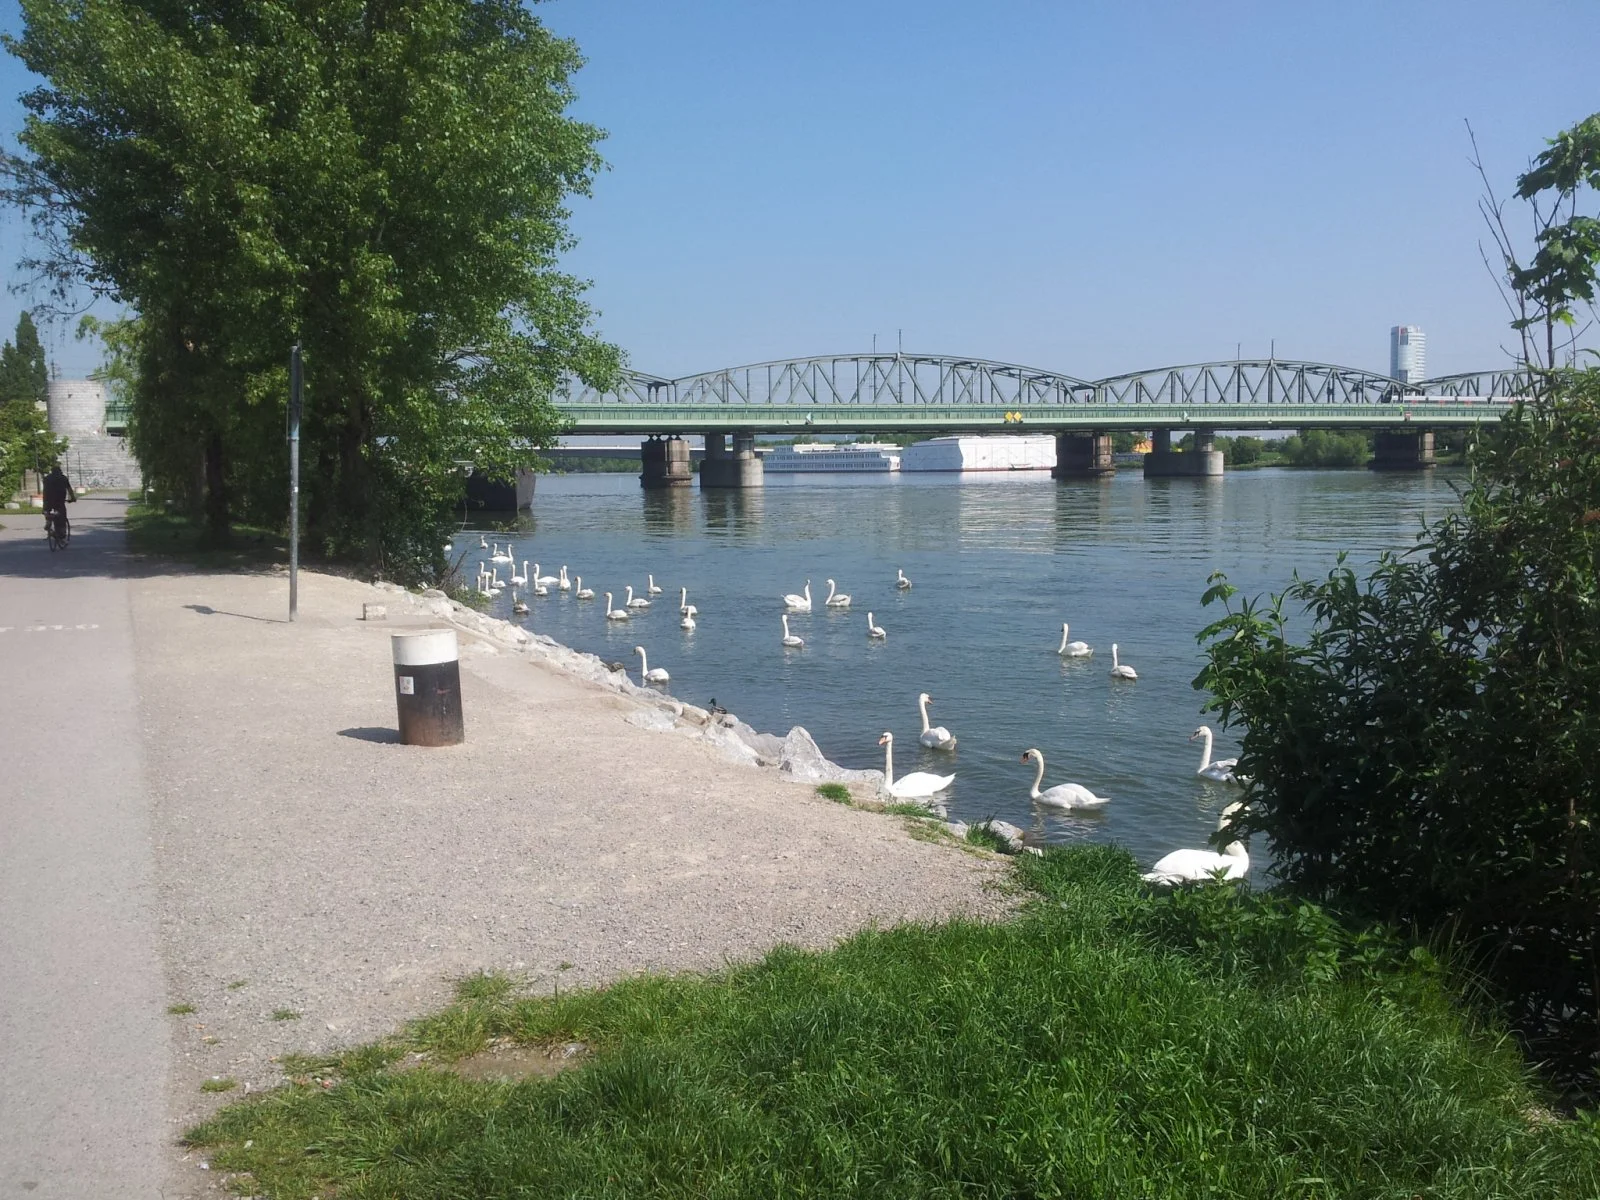 Schwanentanz auf der Donauinsel :)